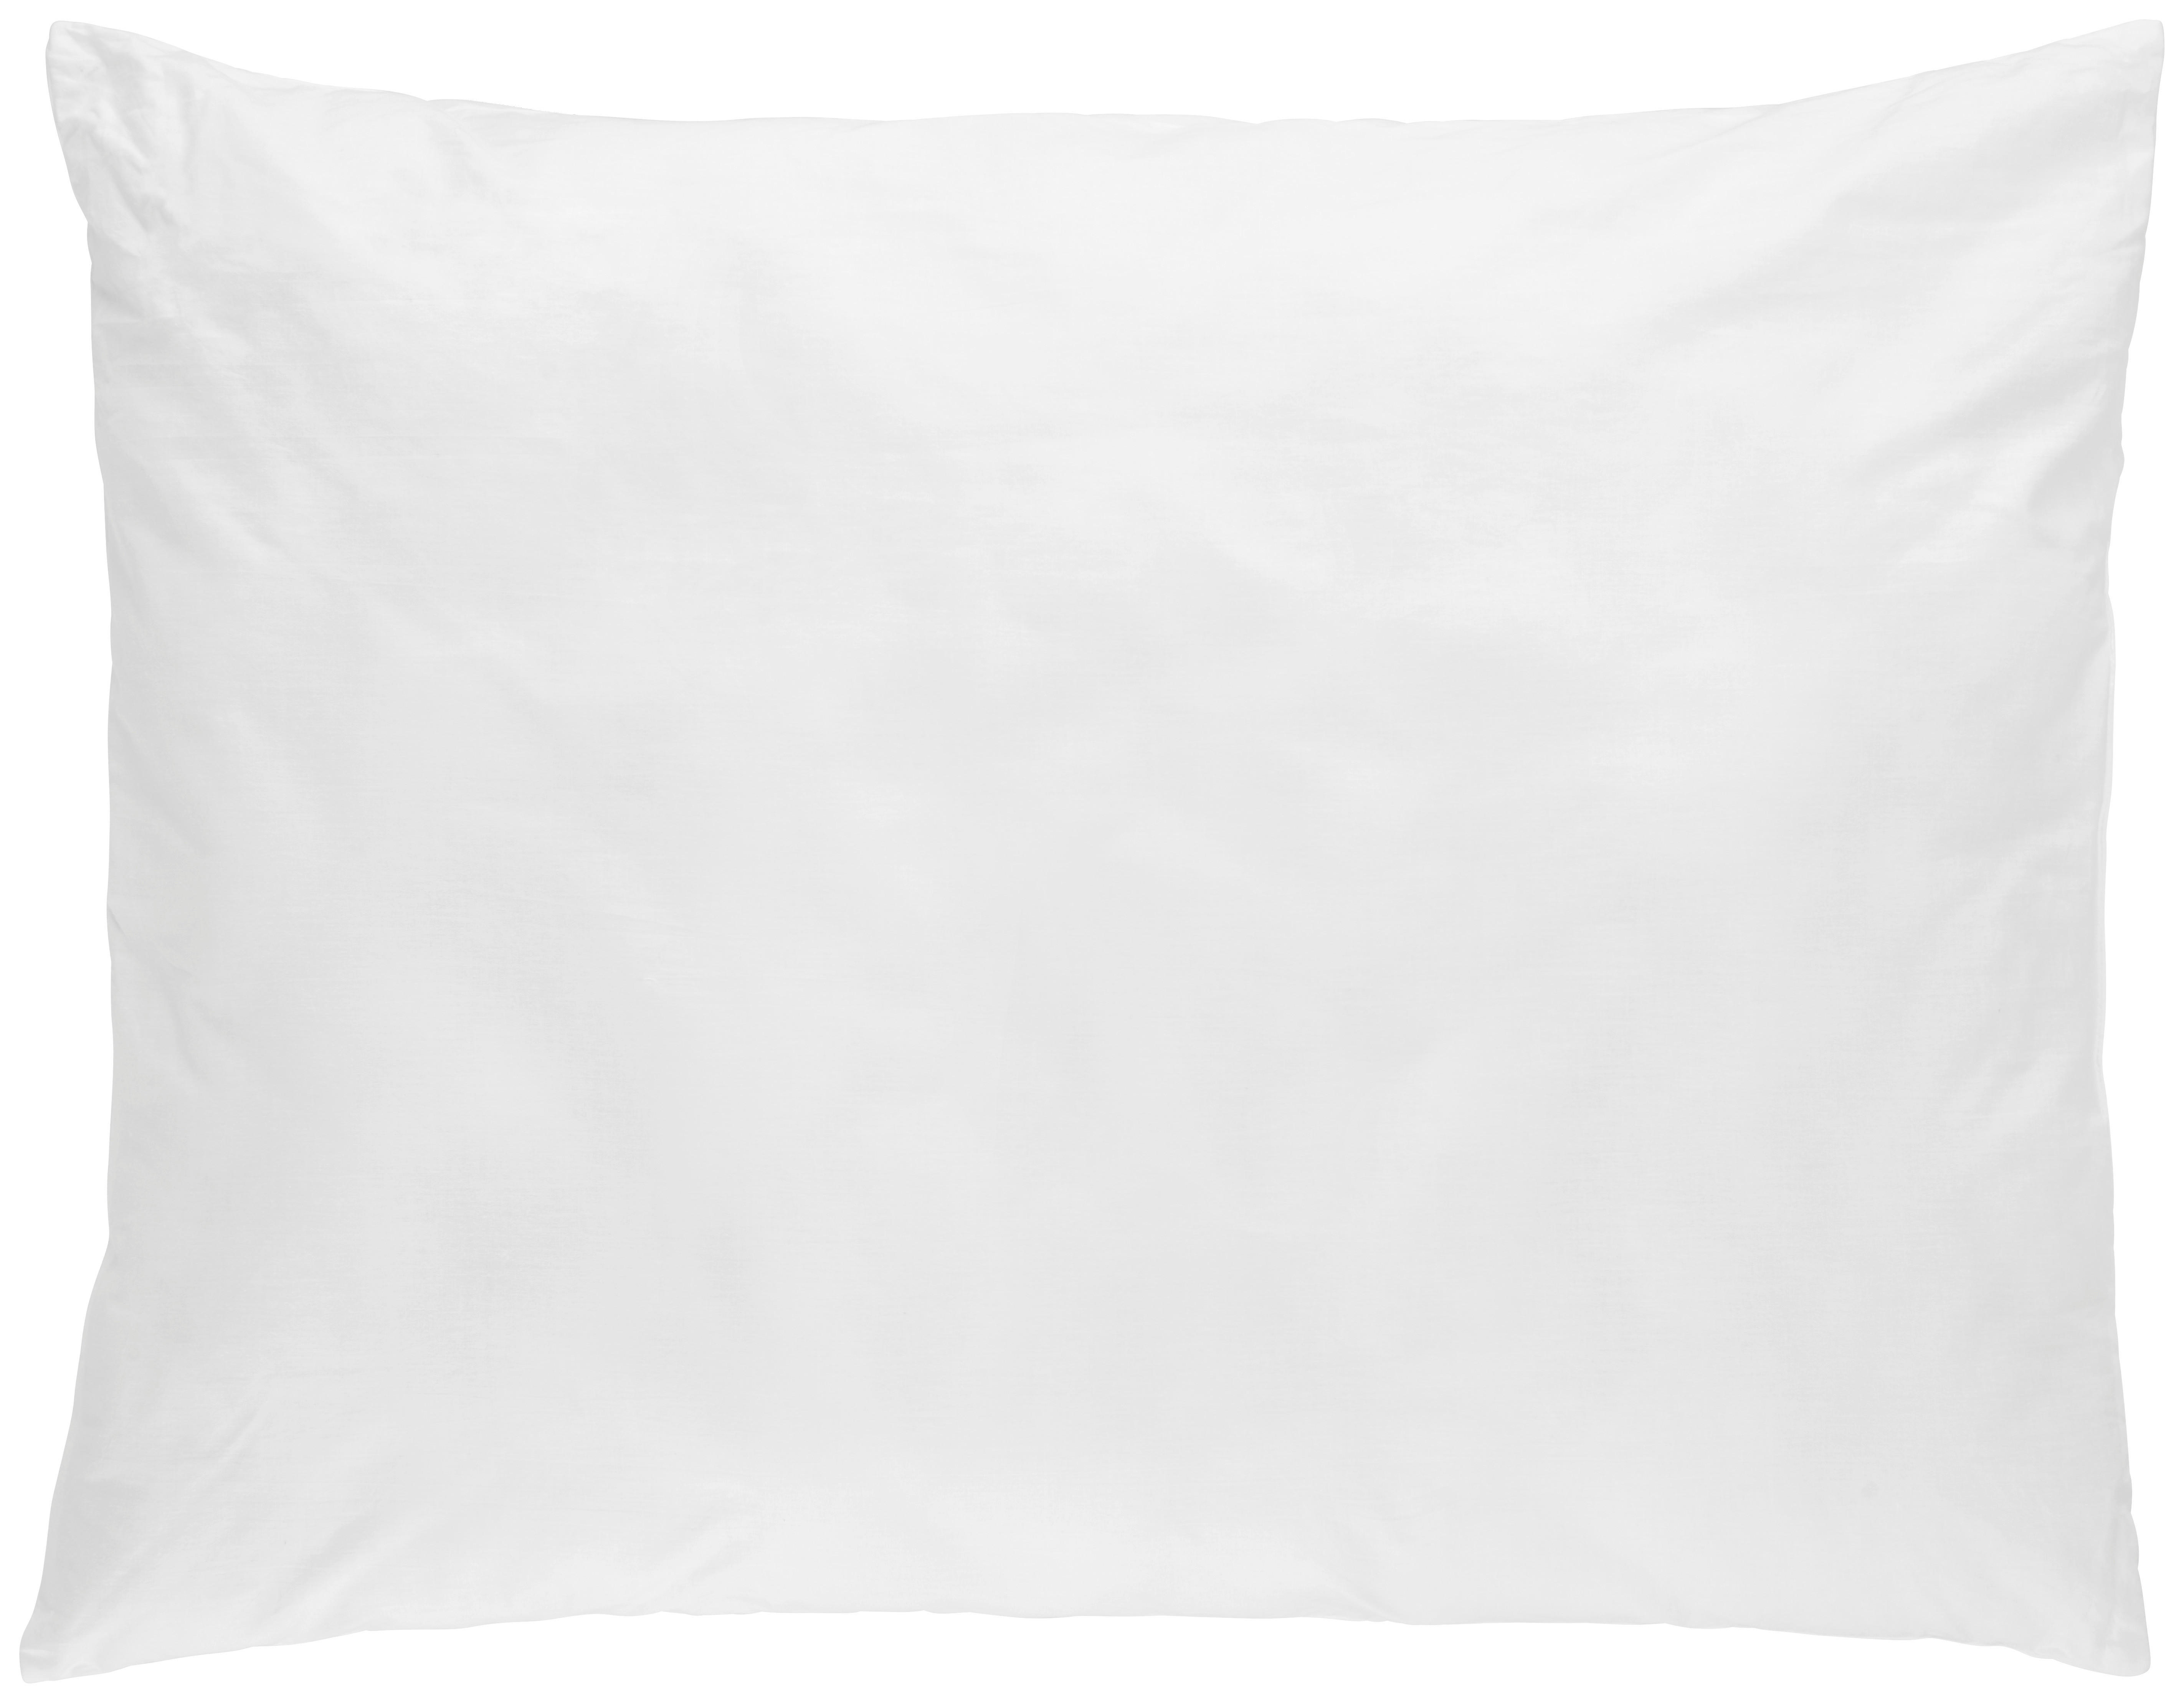 VANKÚŠ POD HLAVU, 70/90 cm - biela, Basics, textil (70/90cm) - Sleeptex